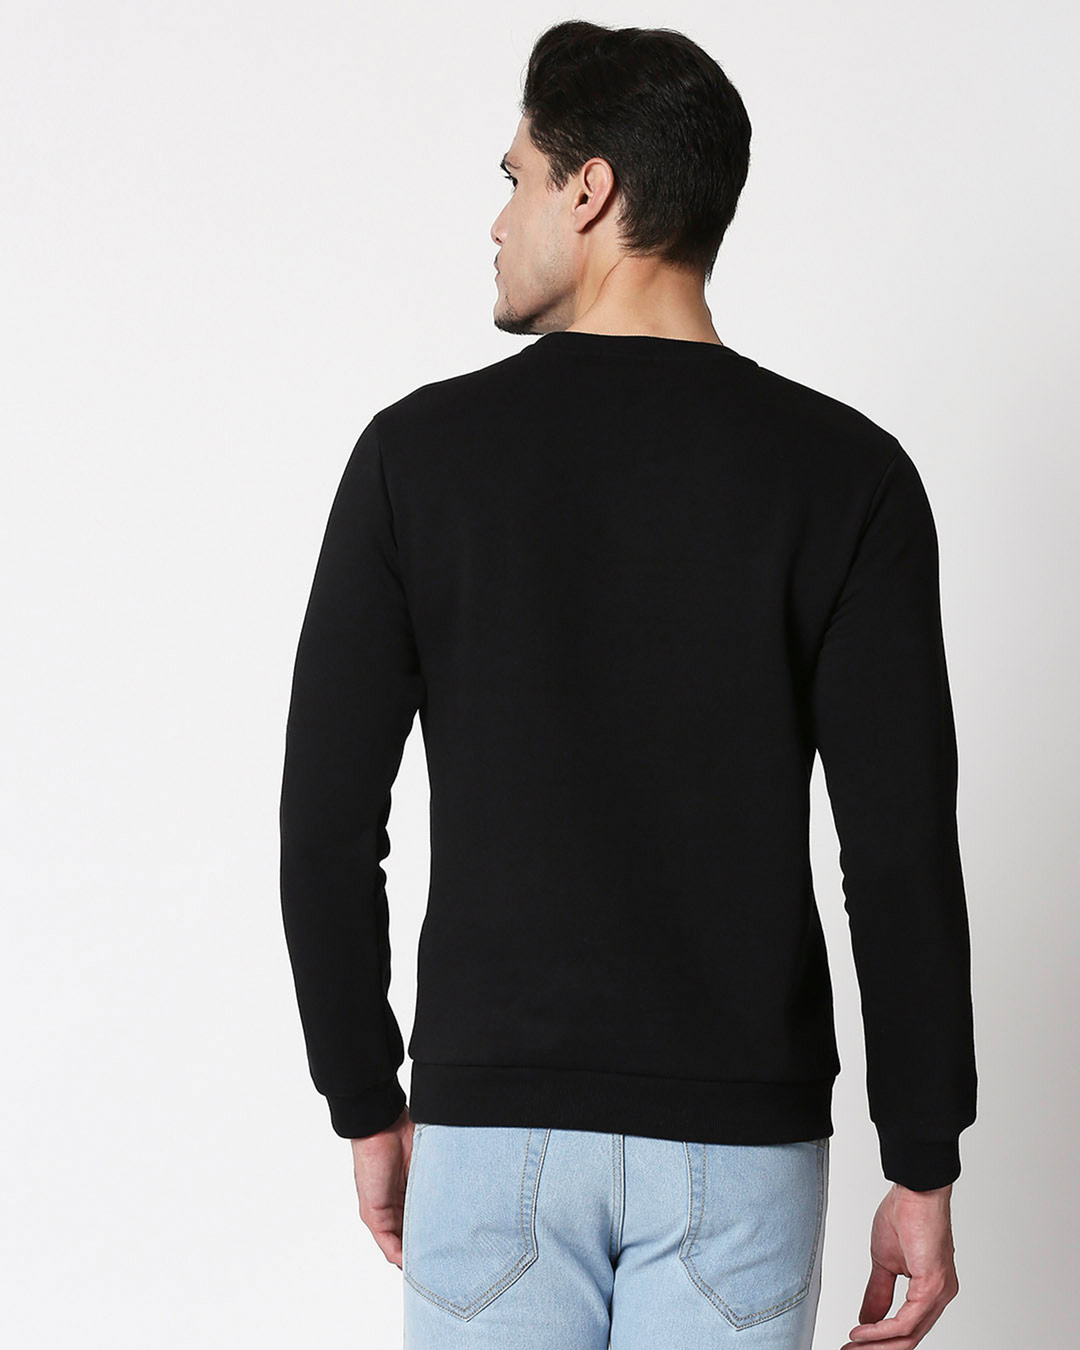 Shop Make Yourself Proud Fleece Sweatshirt Black-Back